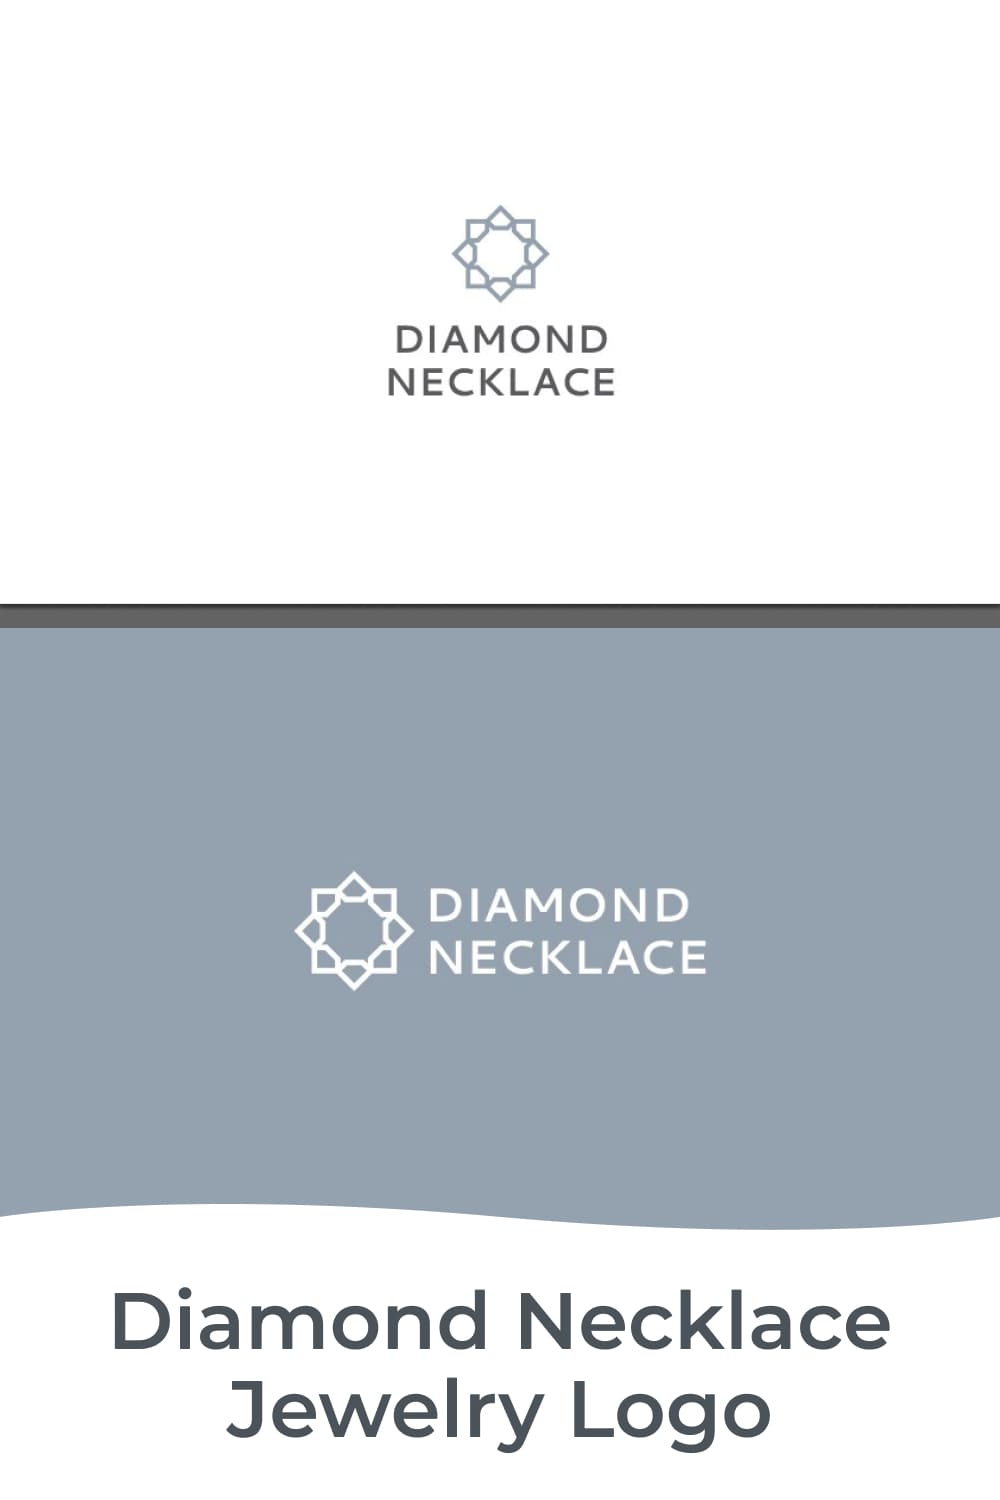 diamond necklace jewelry logo for luxury brand.